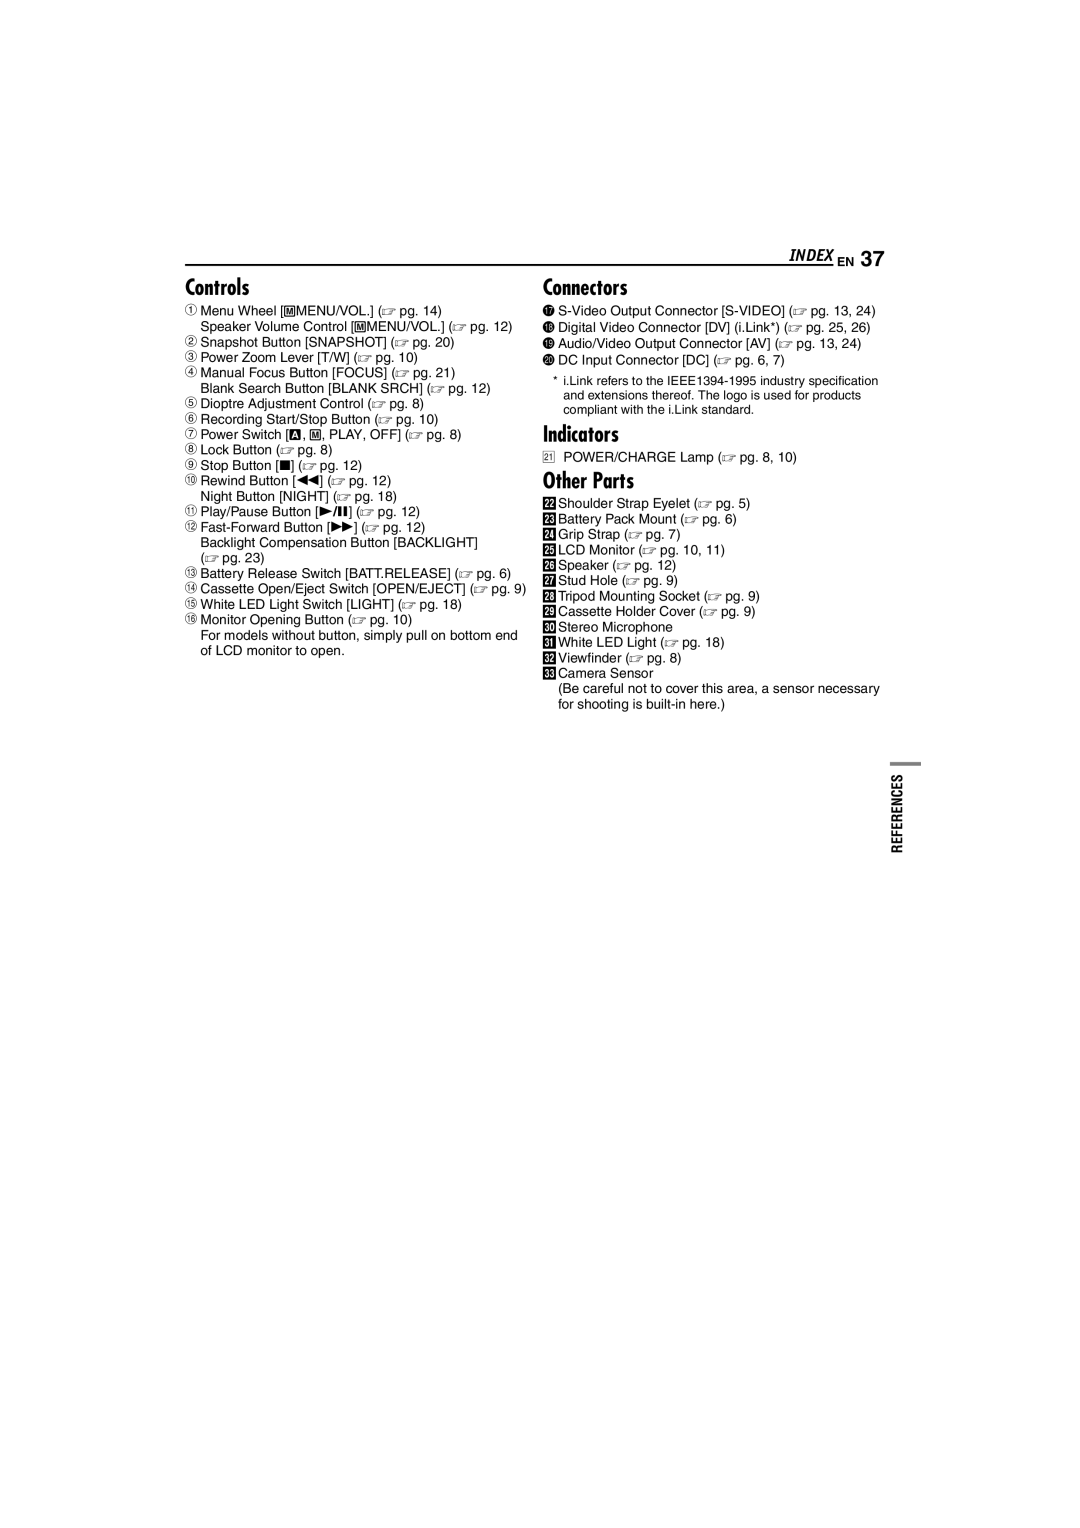 JVC GR-D225 manual Controls, Connectors, Indicators, Other Parts, Index EN 